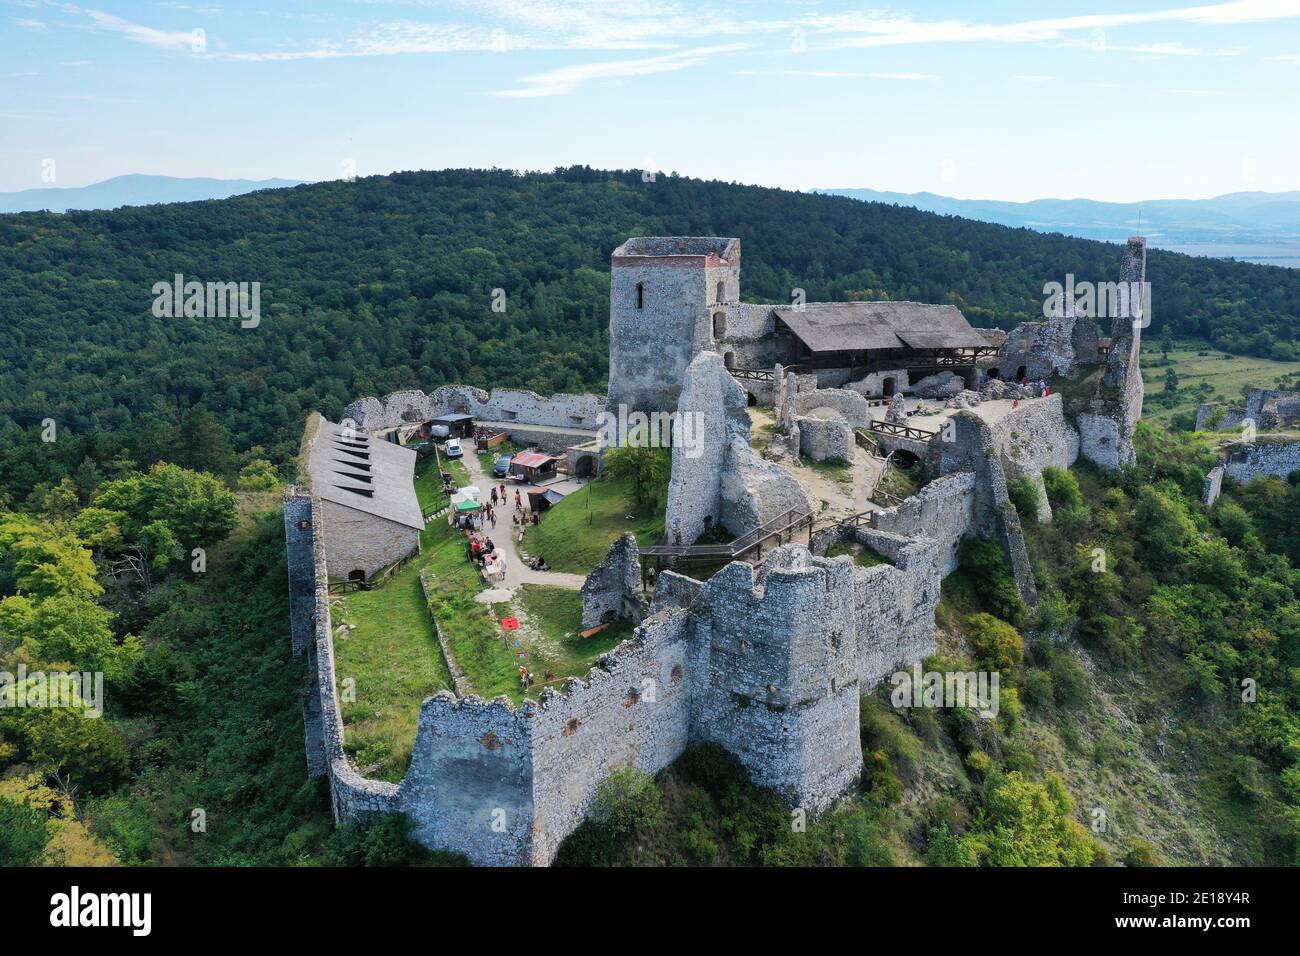 Vue aérienne du château de Cachtice dans le village de Cachtice En Slovaquie Banque D'Images